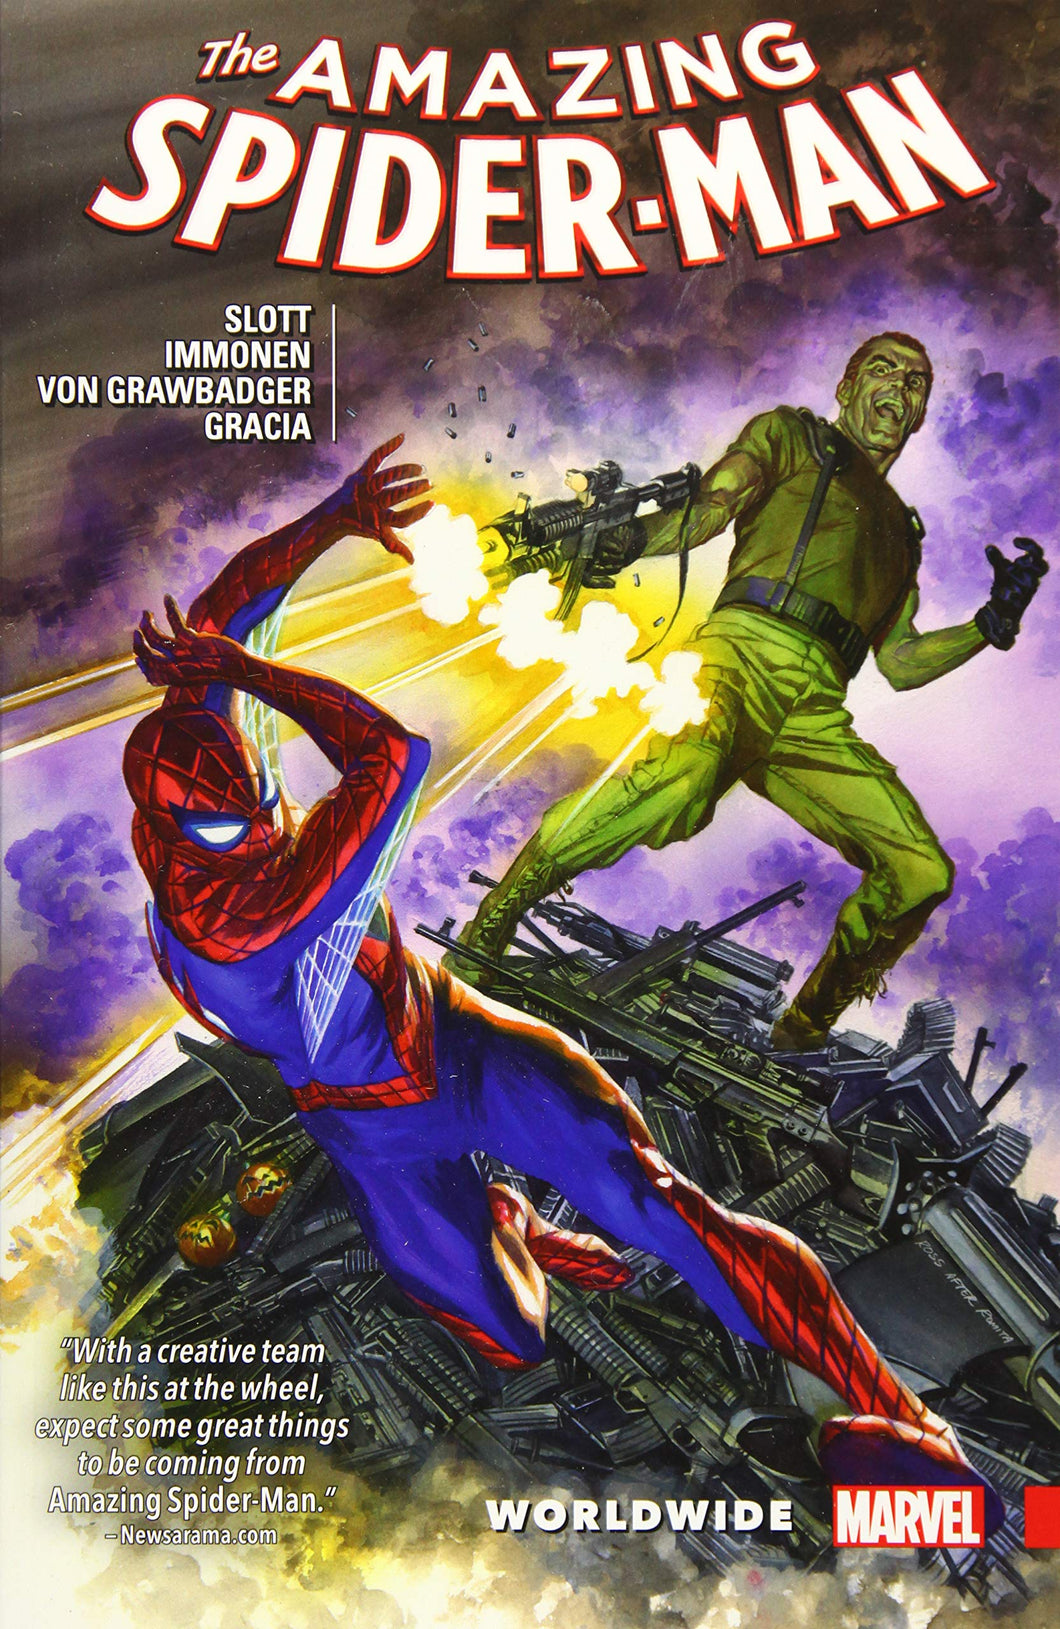 Amazing Spider-Man Vol. 6 : Worldwide